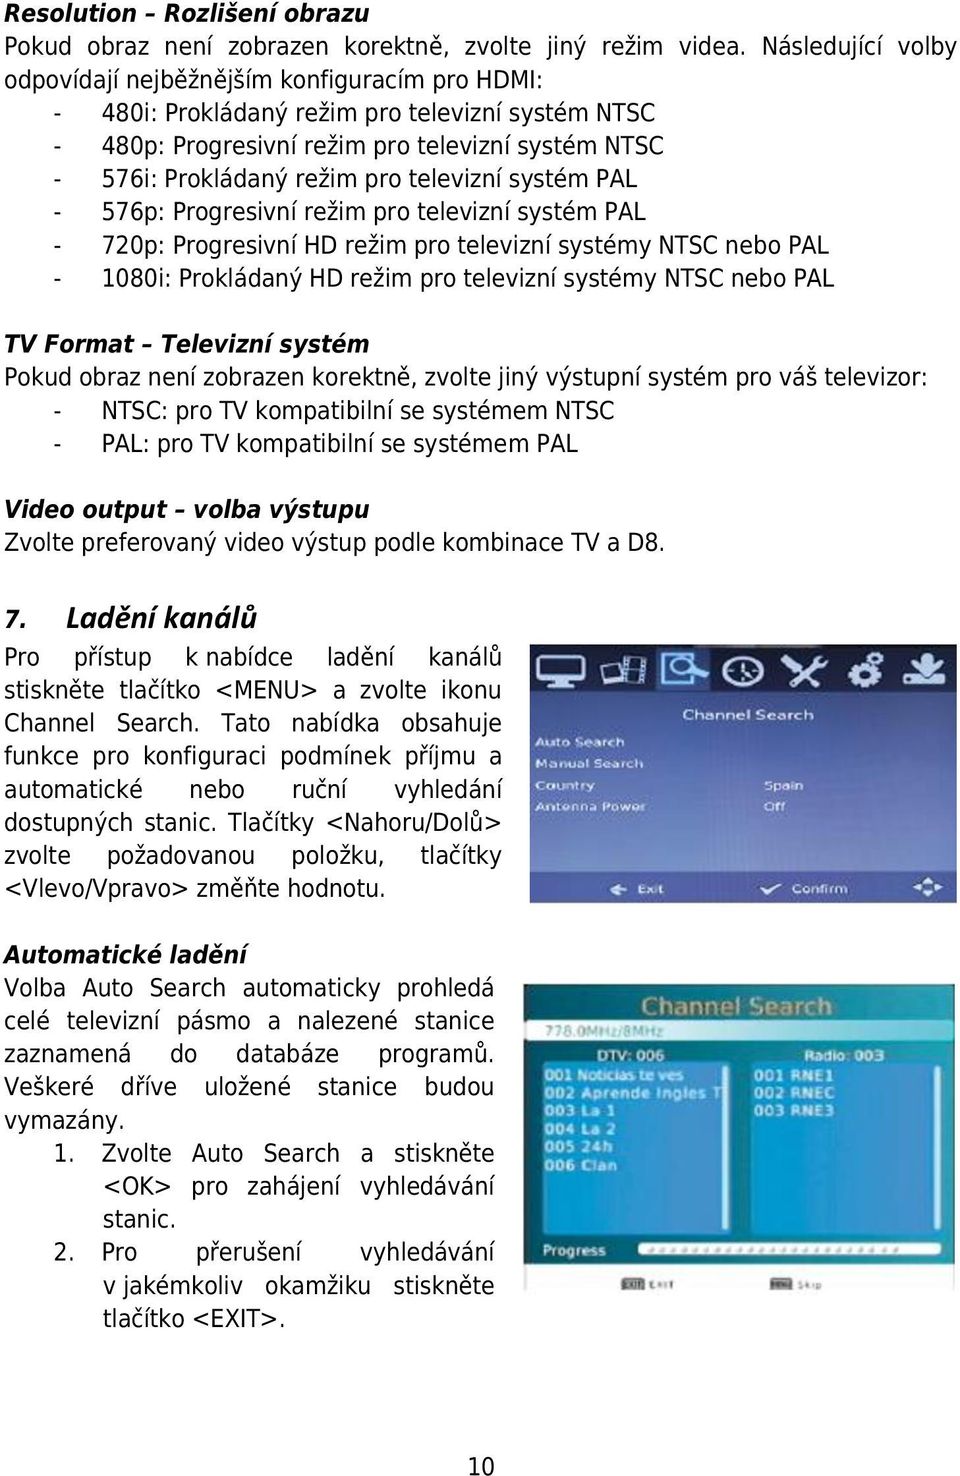 televizní systém PAL - 576p: Progresivní režim pro televizní systém PAL - 720p: Progresivní HD režim pro televizní systémy NTSC nebo PAL - 1080i: Prokládaný HD režim pro televizní systémy NTSC nebo